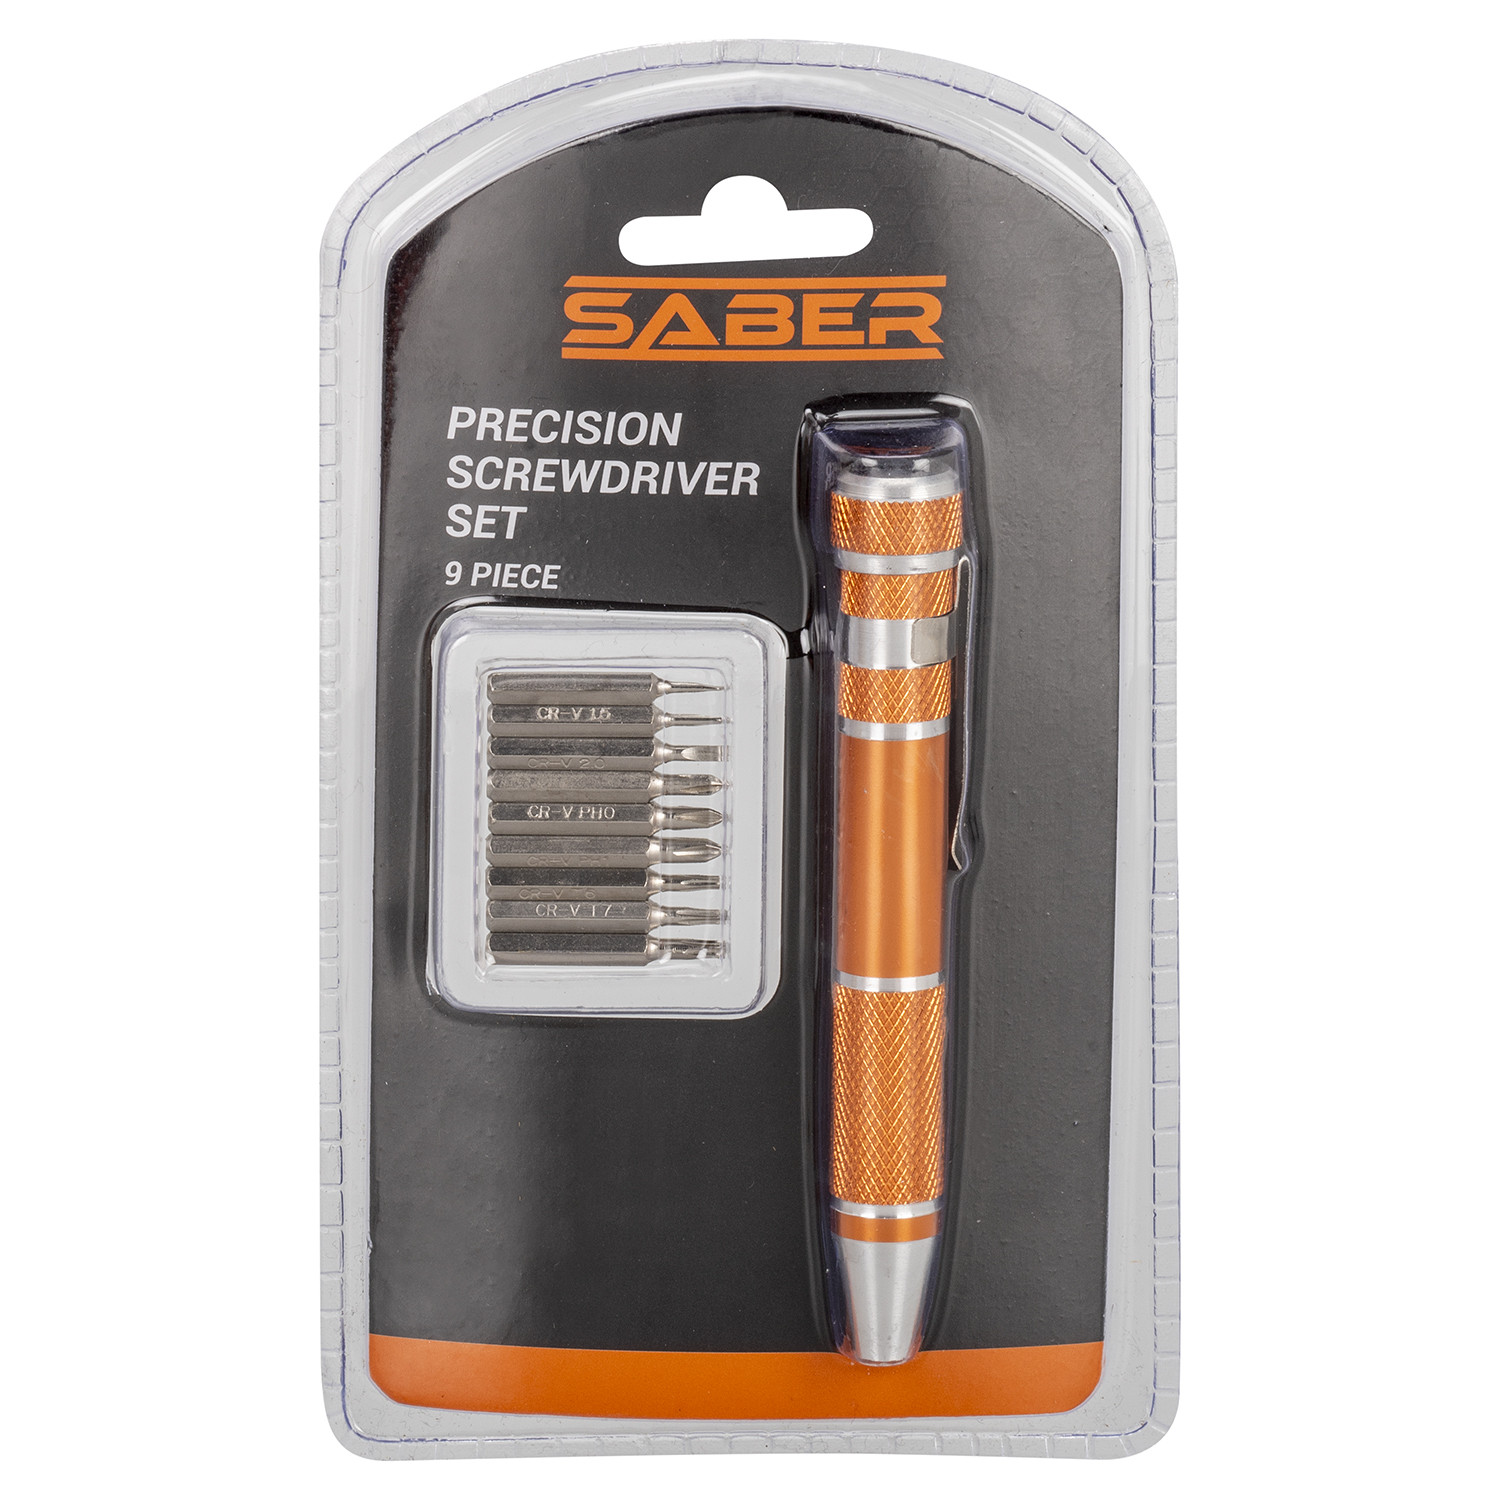 Saber 9 Piece Precision Screwdriver Set Image